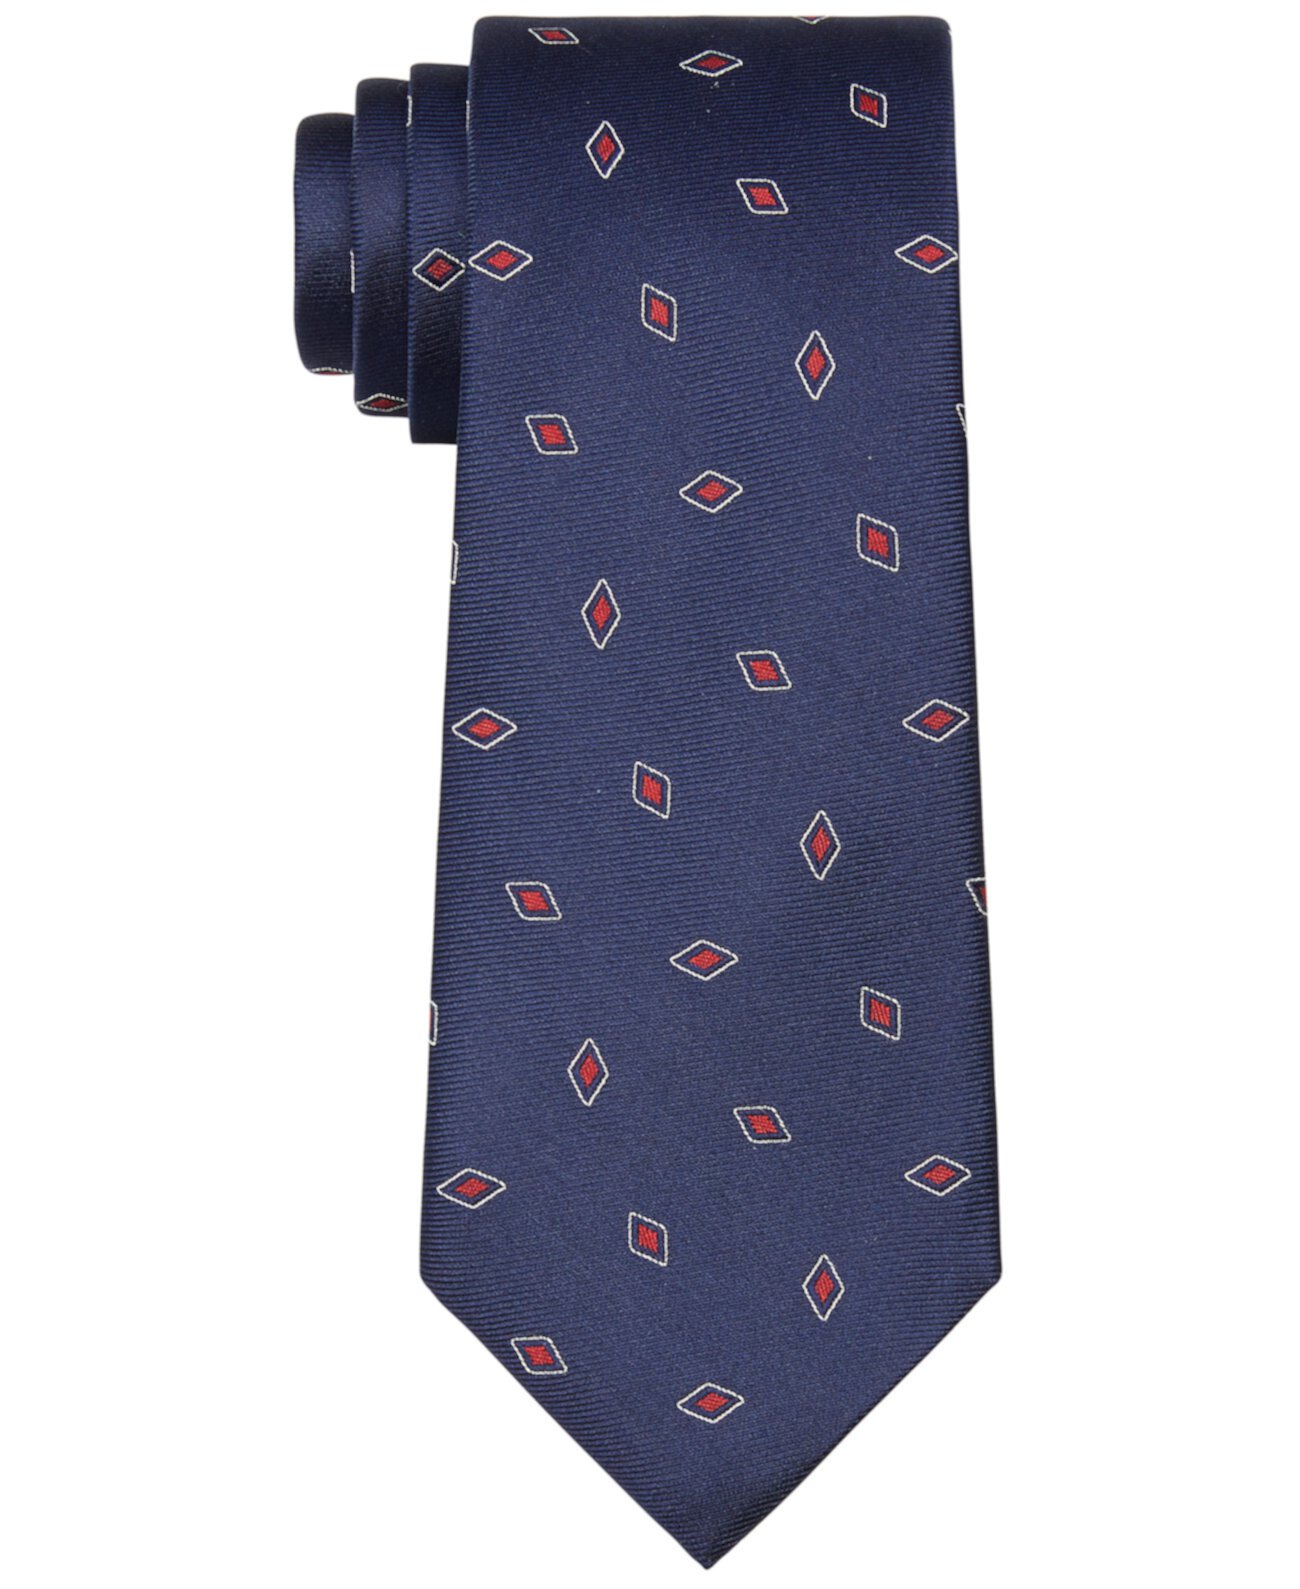 Мужской галстук с контуром и бриллиантами Ralph Lauren